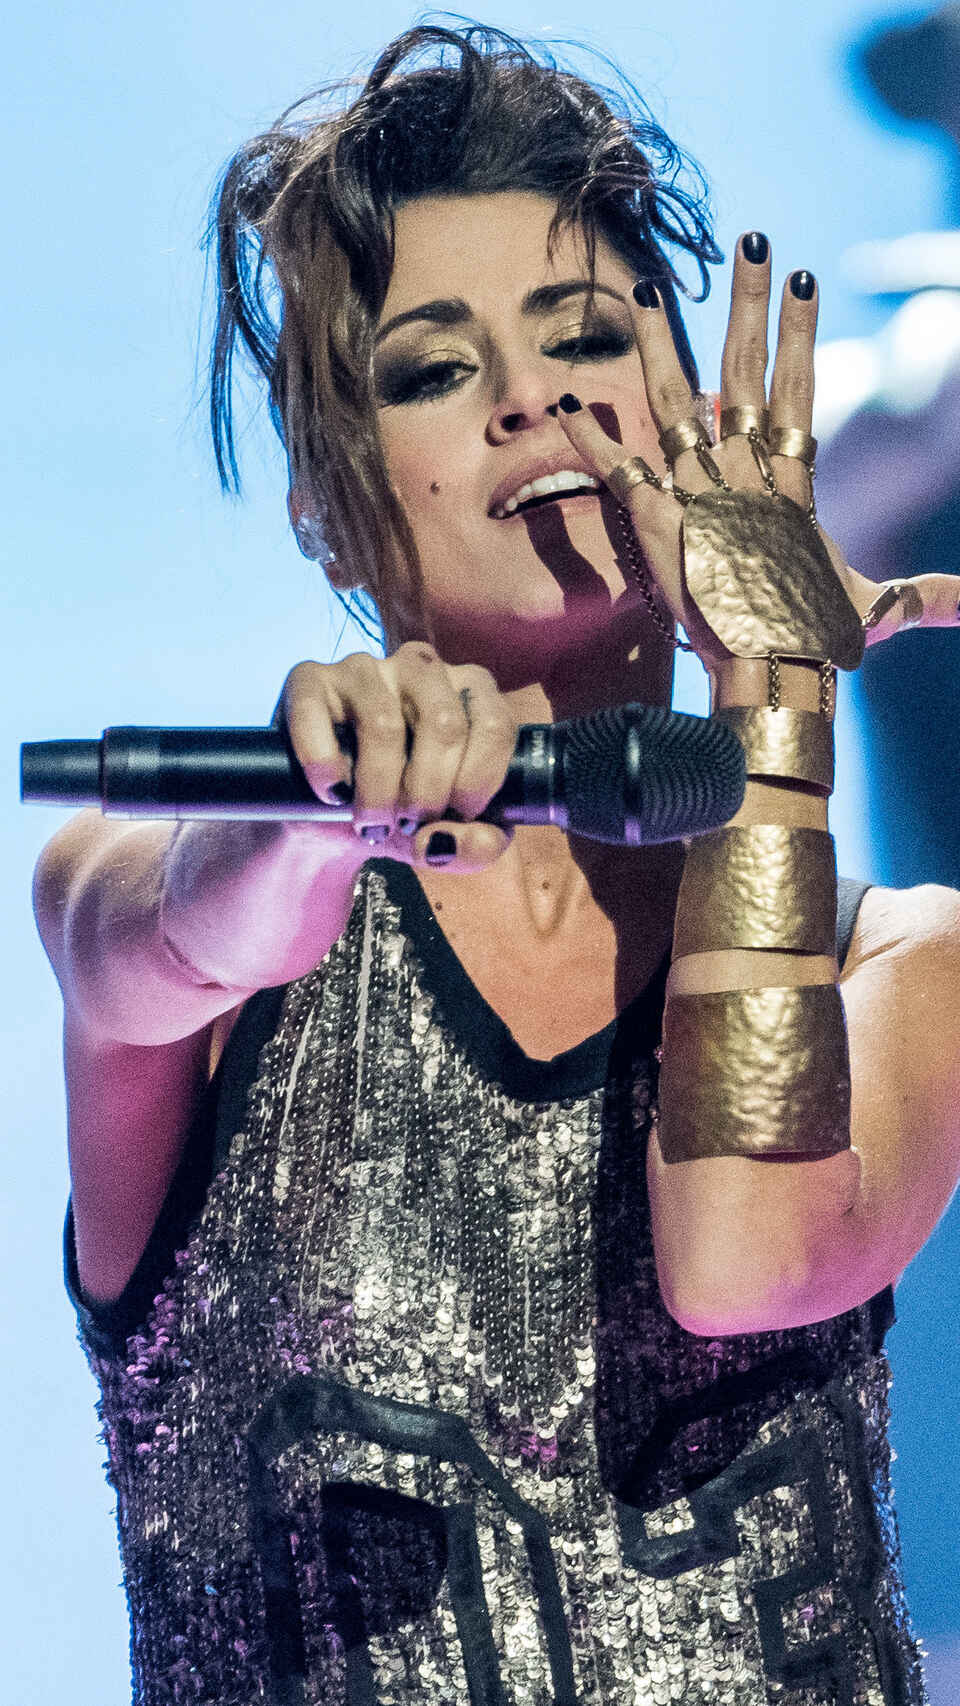 Barei durante su actuación en el festival de Eurovisión en 2016.